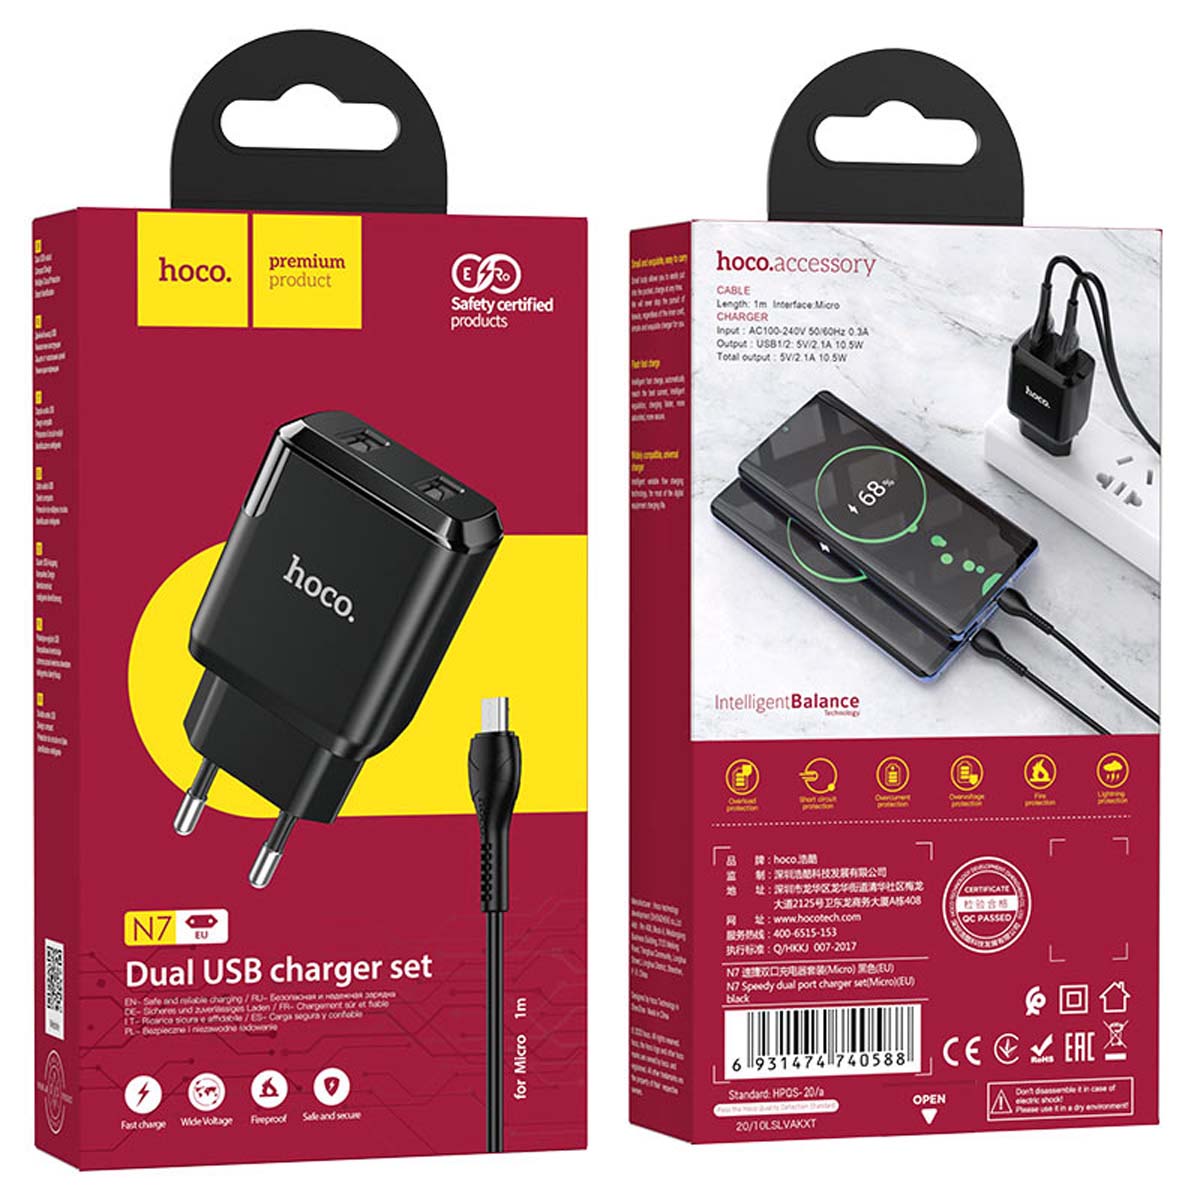 СЗУ (Сетевое зарядное устройство) HOCO N7 Speedy с кабелем Micro USB, 2.1A, длина 1 метр, цвет черный